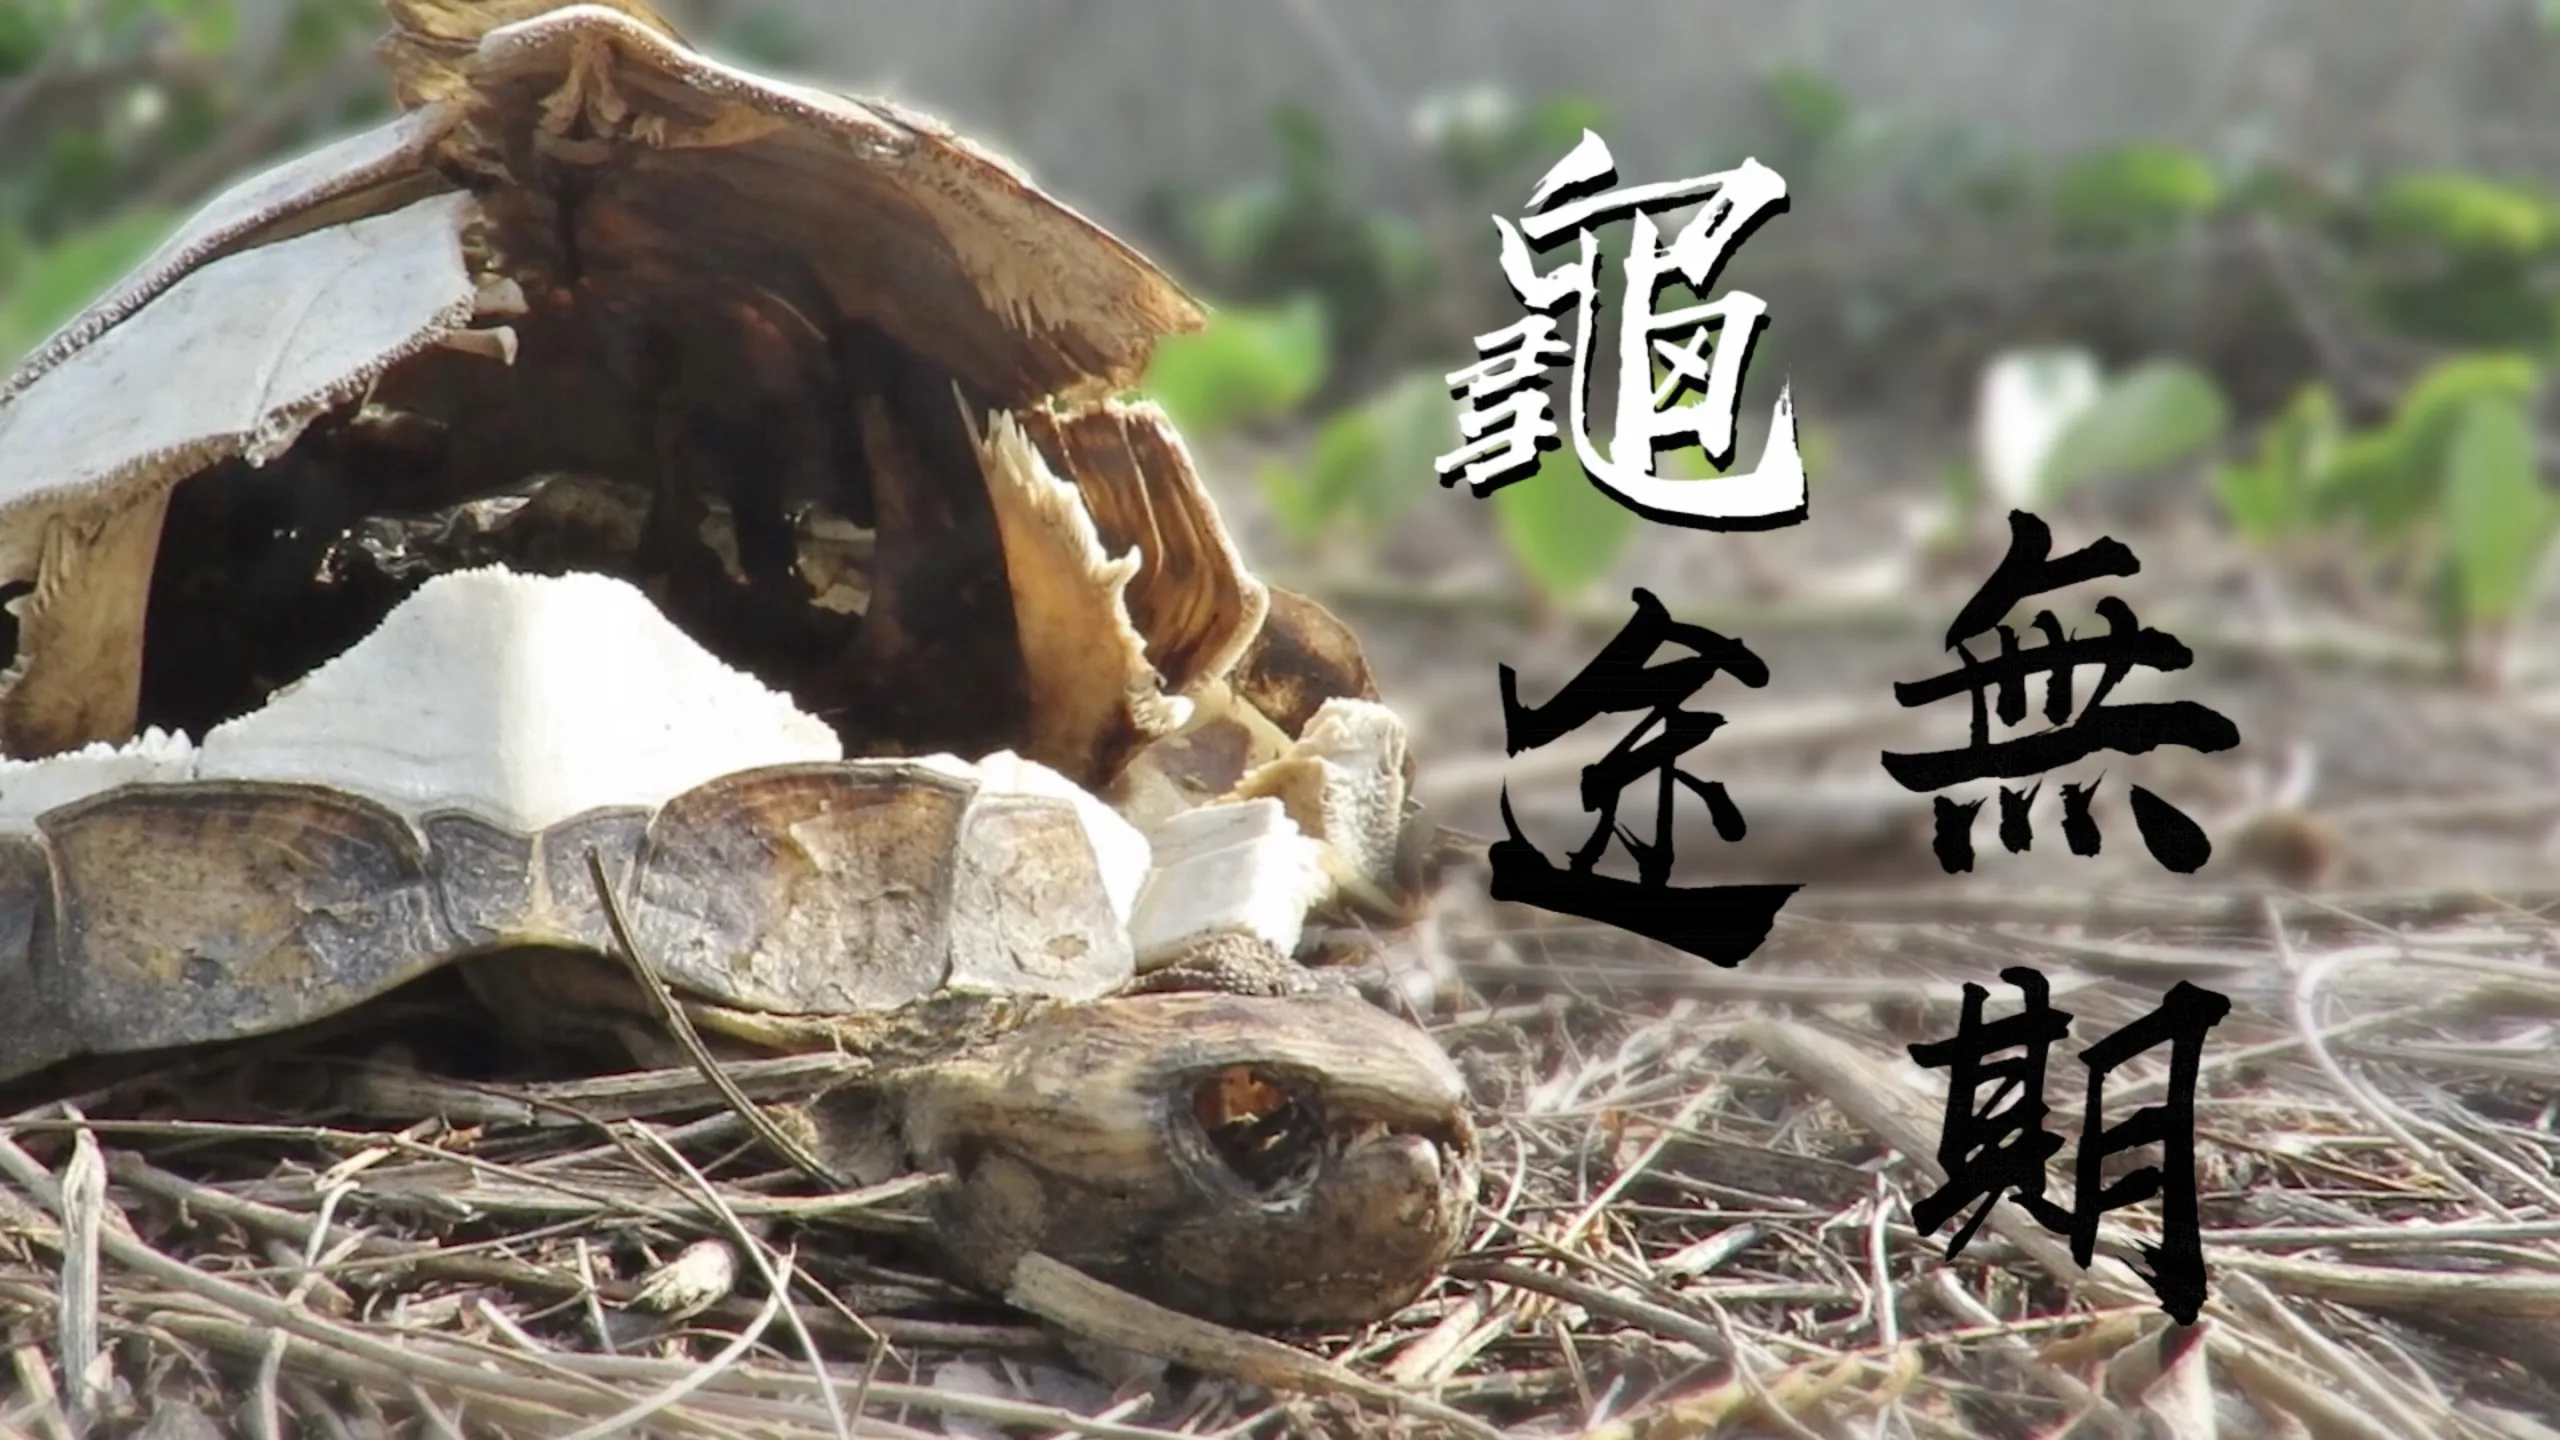 龜途無期—台灣原生種斑龜悲歌